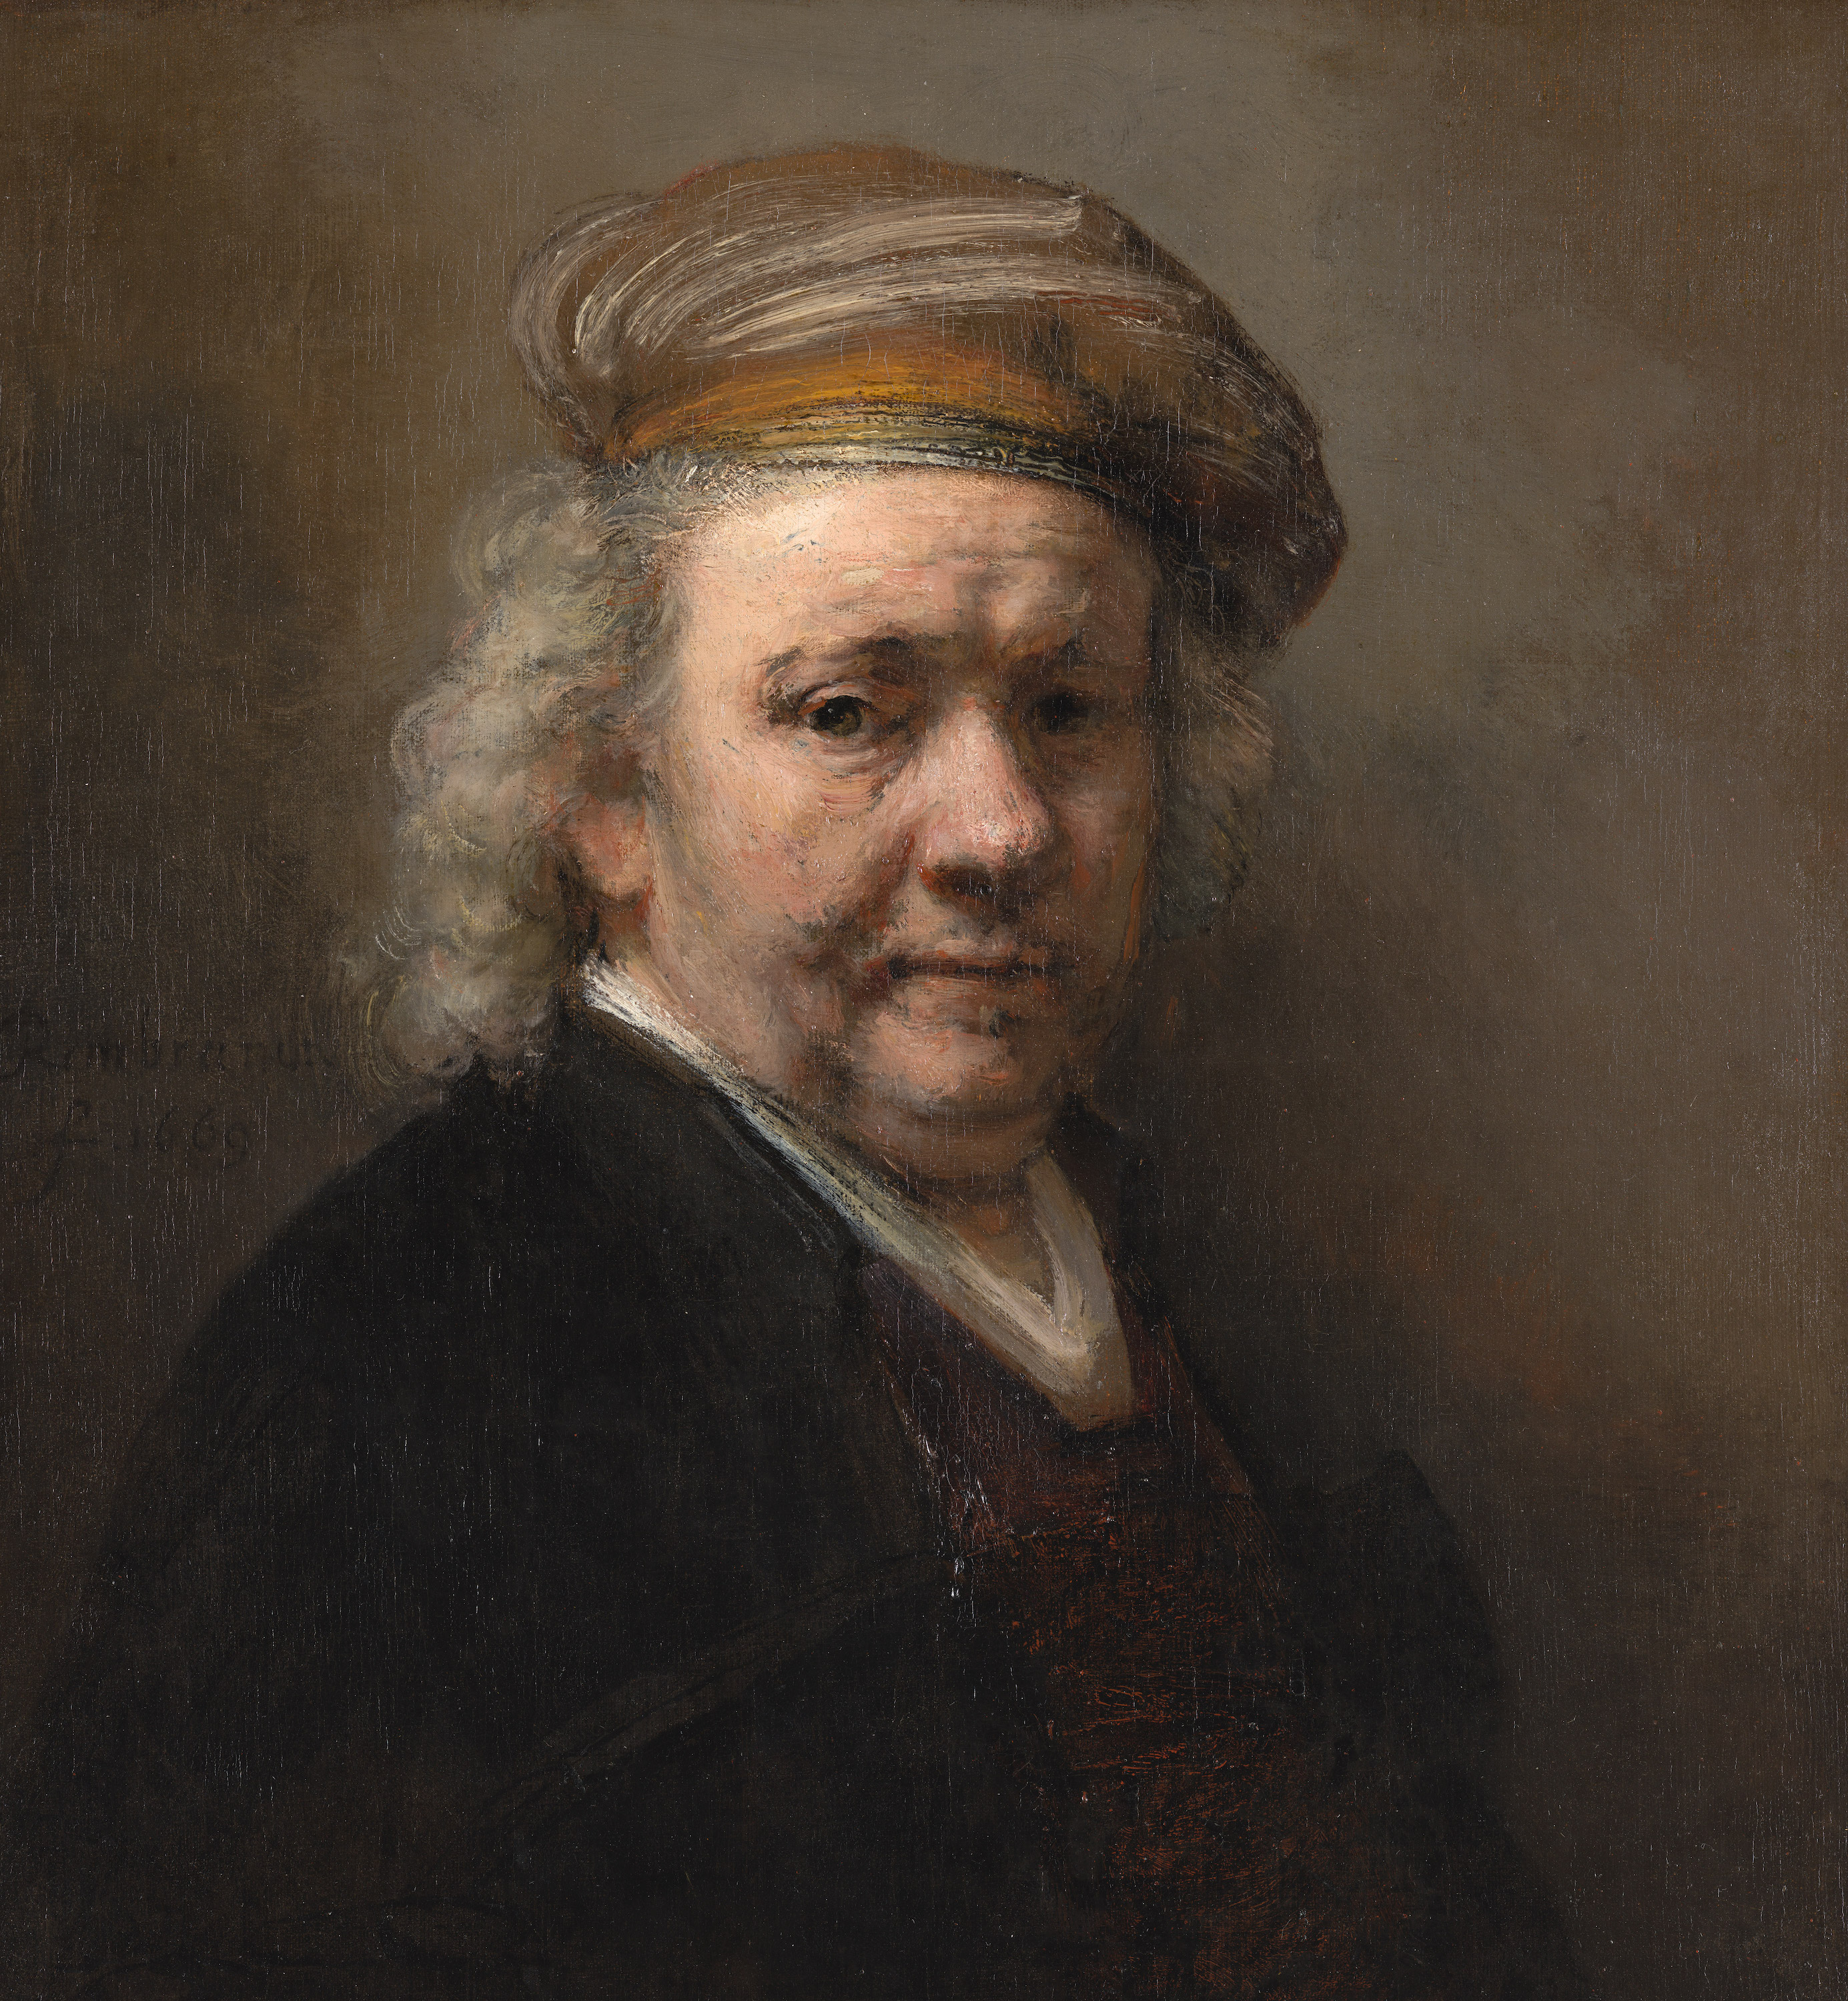 خود نگاره by Rembrandt van Rijn - ۱۶۶۹ - ۶۵.۴×۶۰.۲ سانتی متر 